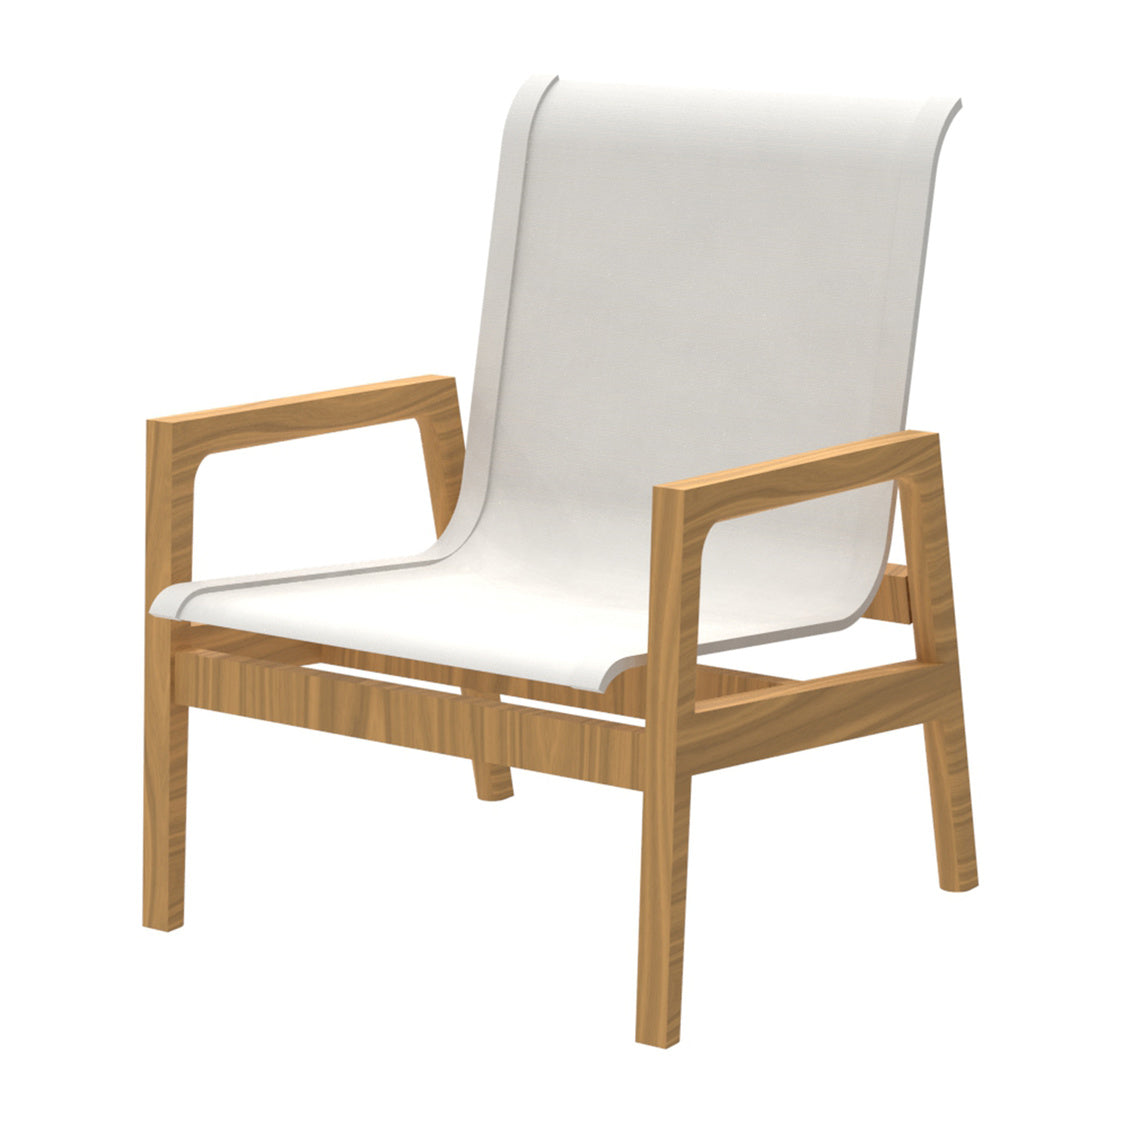 Seashore N-Dura Lounge Chair